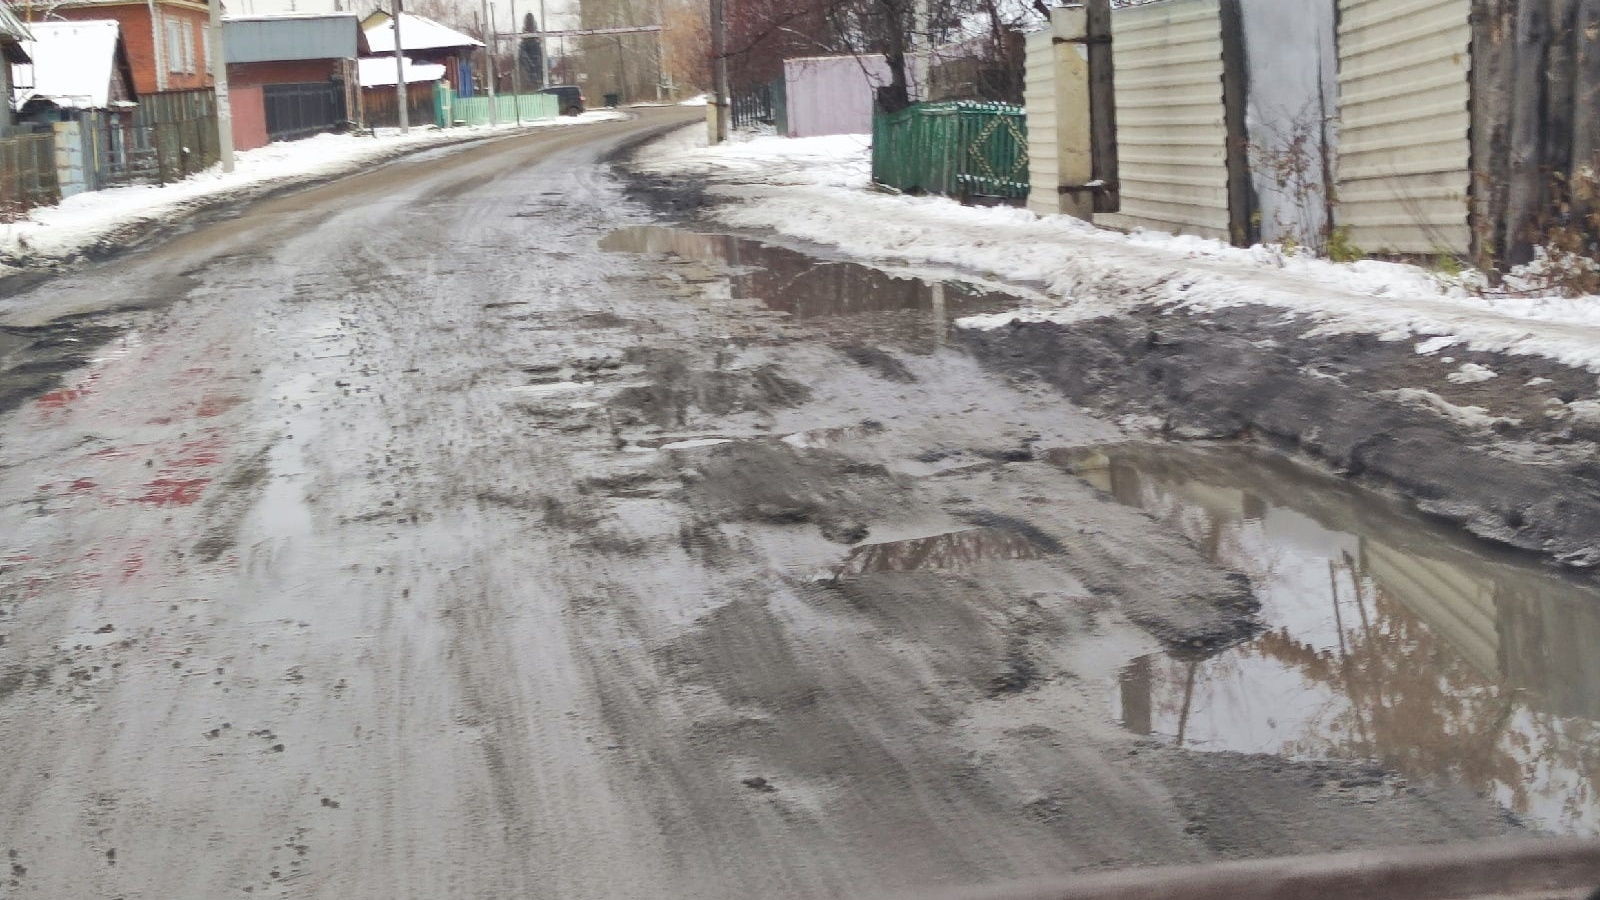 «Выполнен ямочный ремонт»: зауральские власти отчитались о ремонте дороги в Иковке, но не все жители его видели